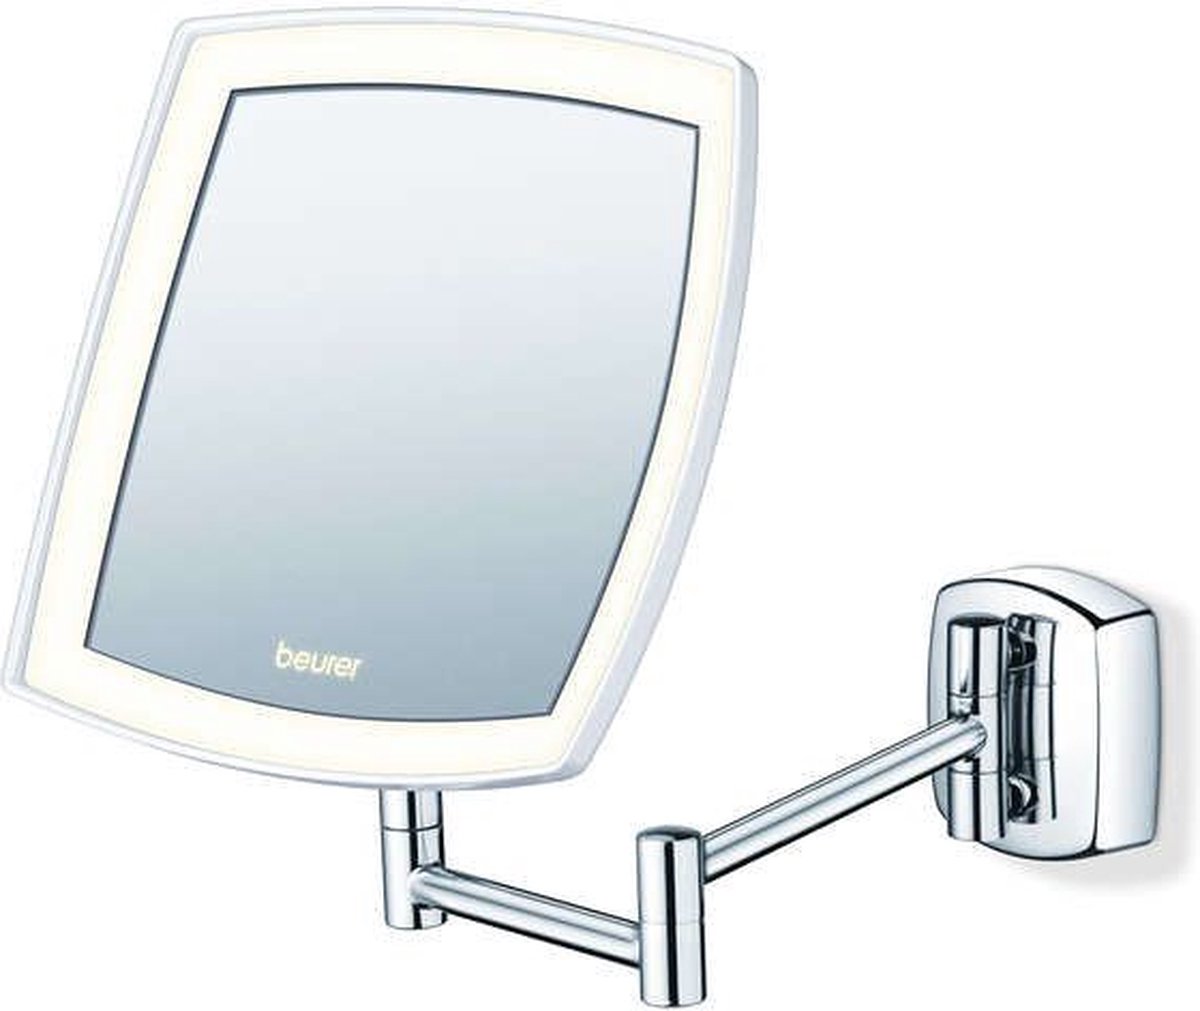 Beurer BS 89 Make up spiegel - LED verlichting rondom - Wandspiegel - Muurmontage - 5x Vergroting - Vierkant 16 x 16 cm - Dimmer - Incl. batterijen - 3 Jaar garantie - Beurer